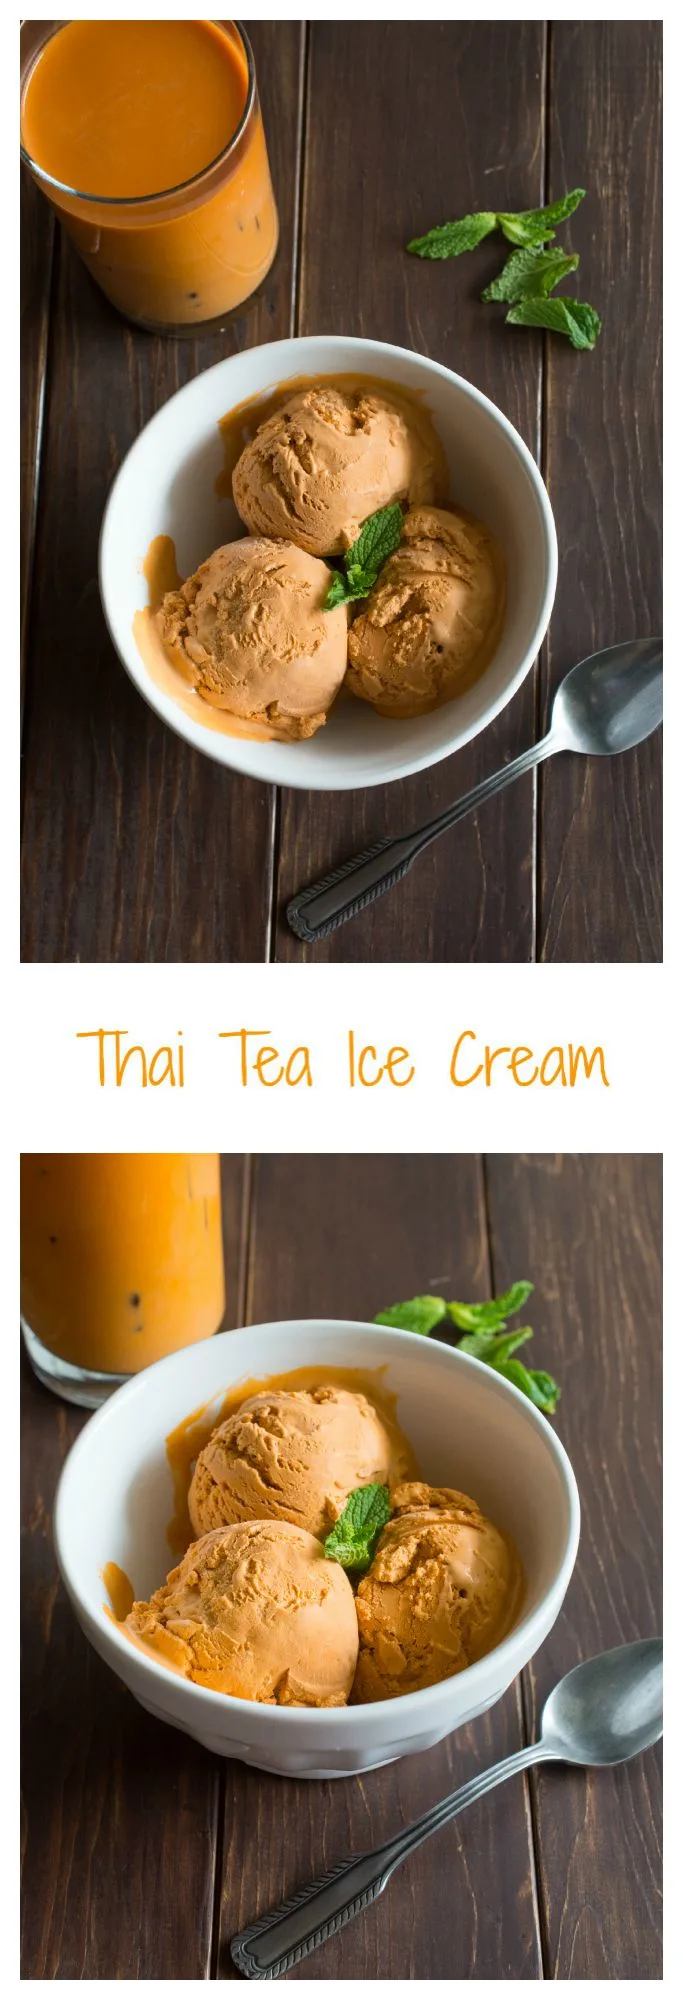 Thai Tea Ice Cream - wokandskillet.com